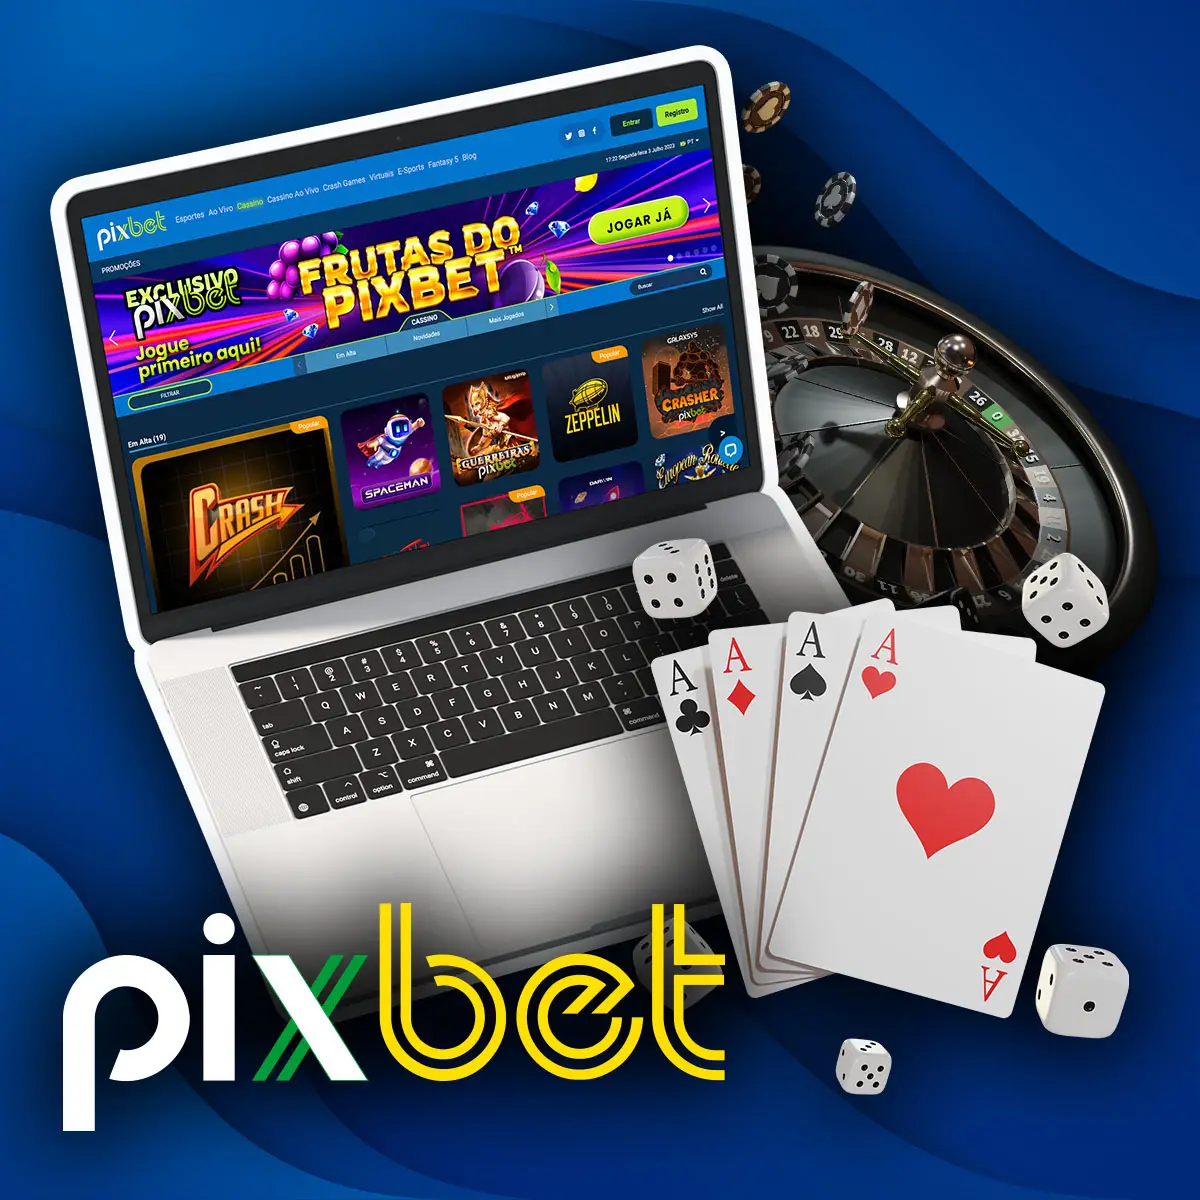 Pixbet casino oficial - Como começar a jogar